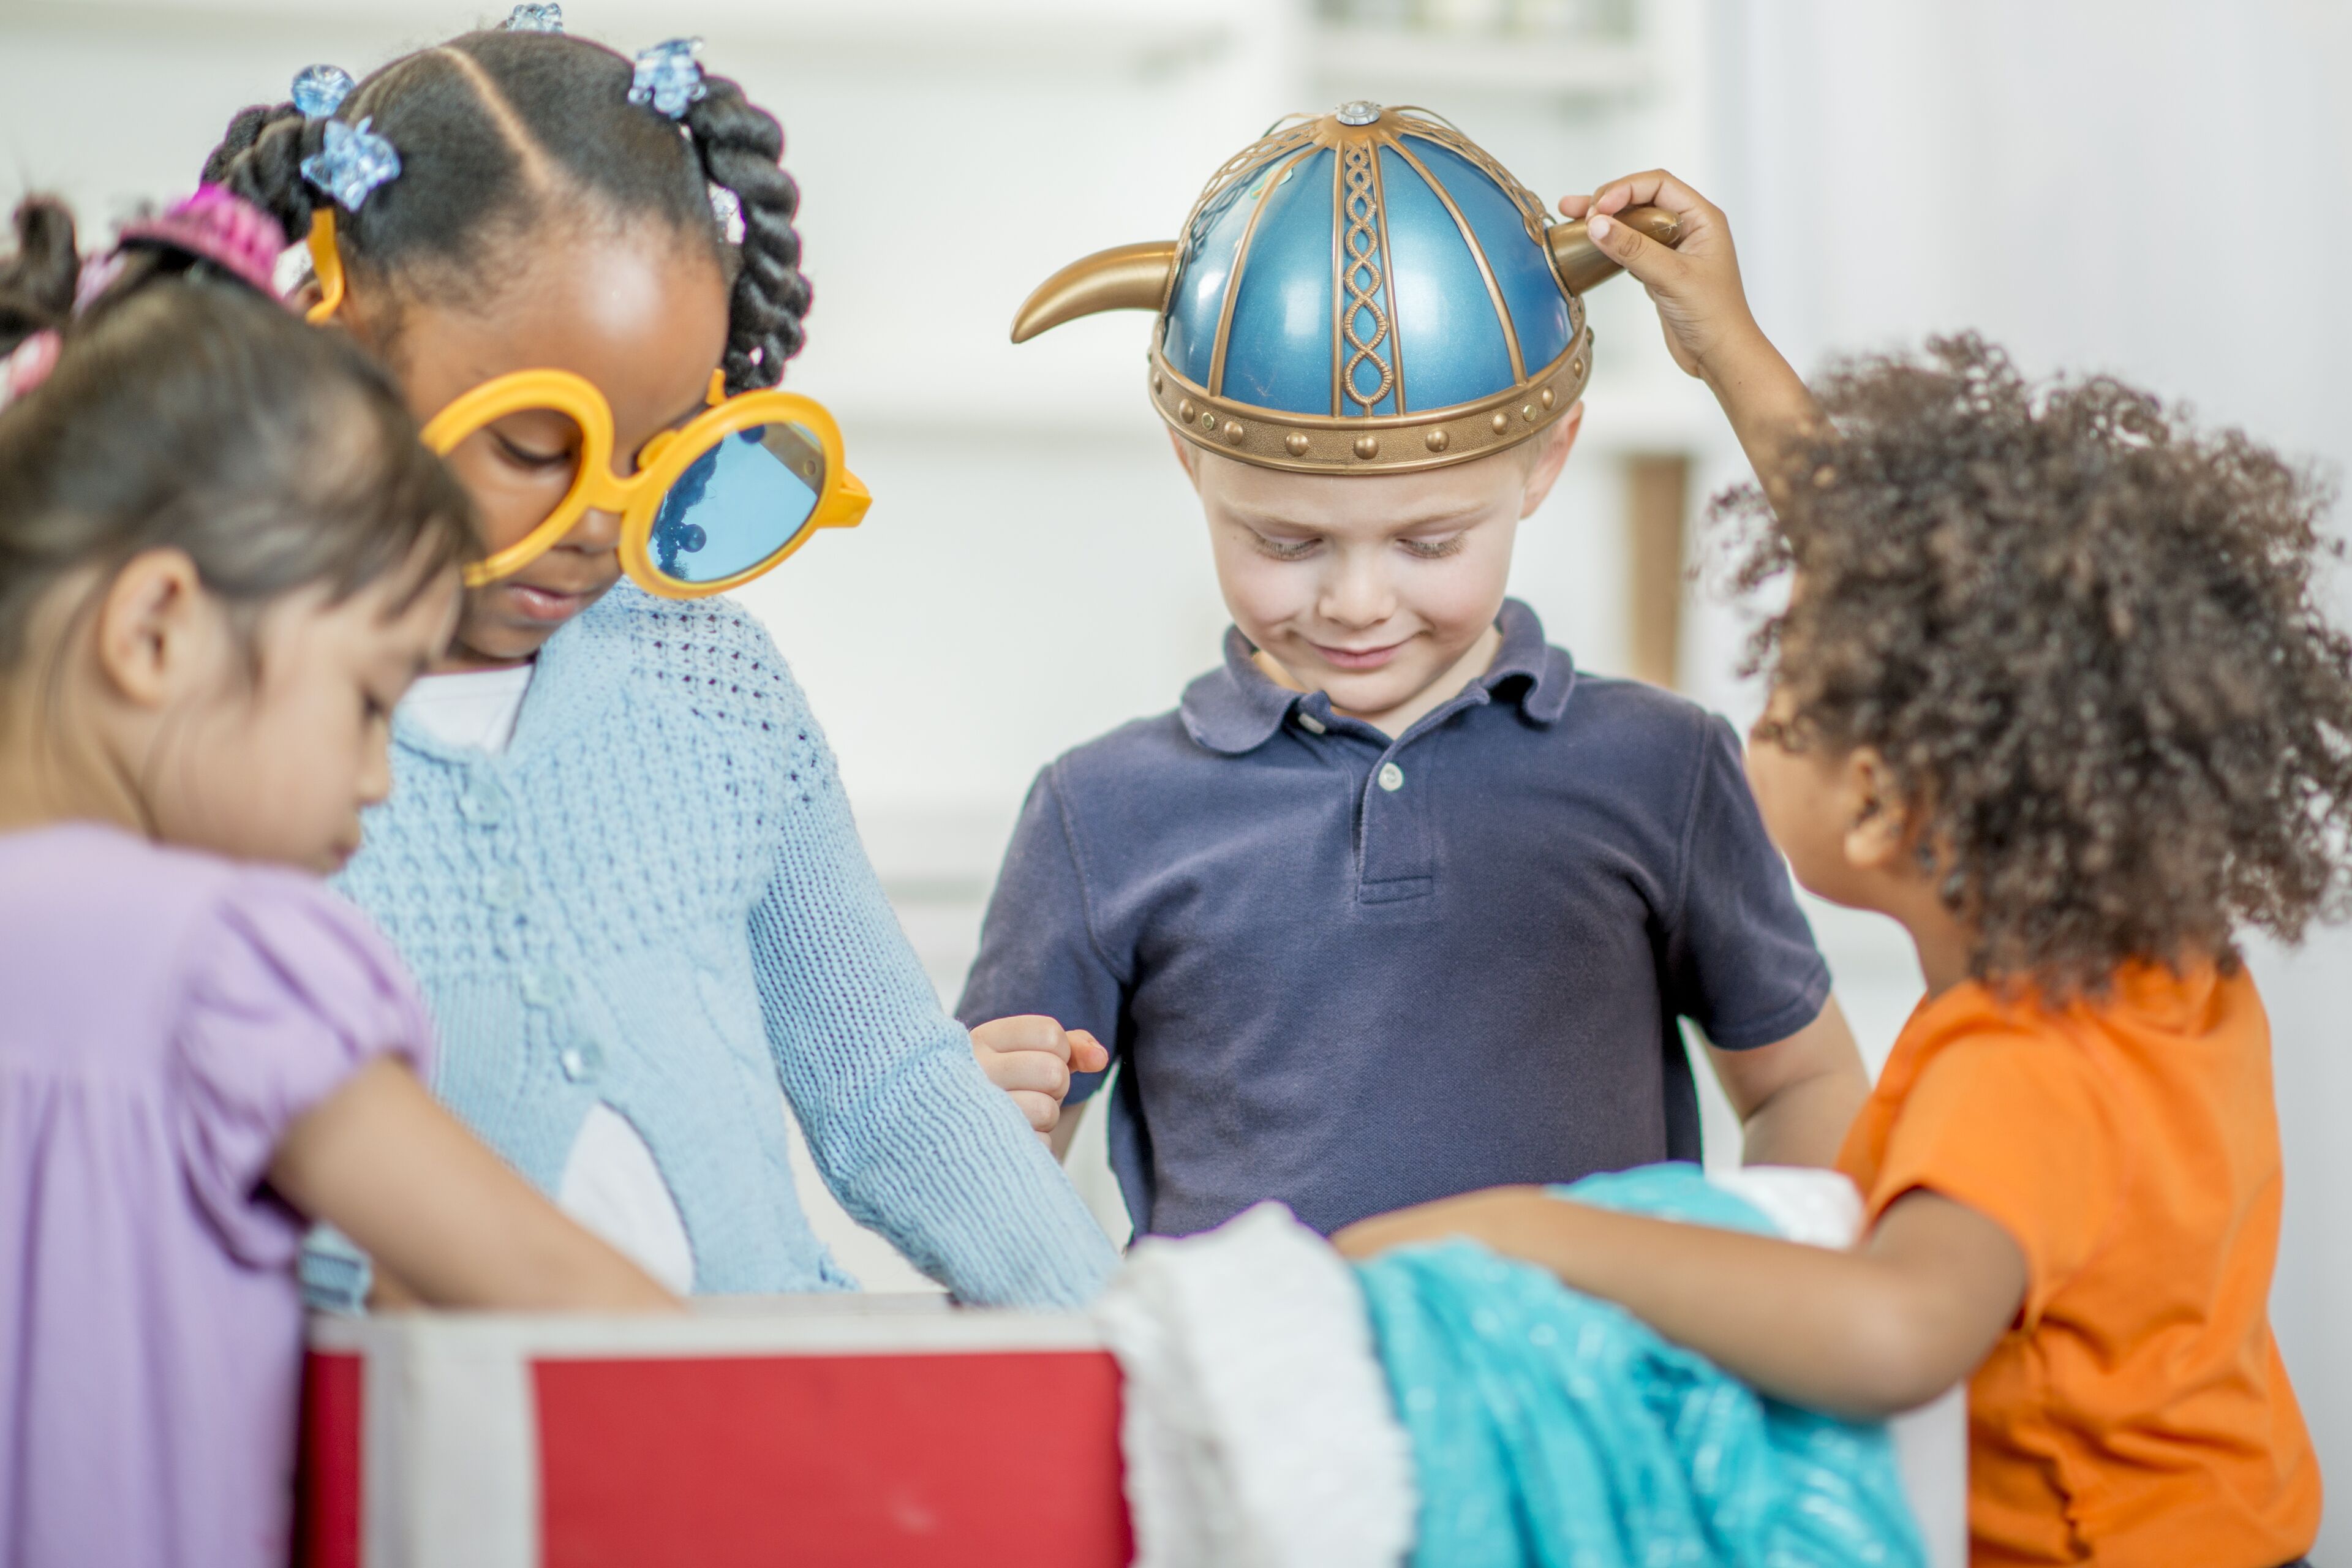 Un groupe de quatre enfants participe à une activité ludique de déguisement, un garçon sourit tandis qu'une fille lui place un casque de Viking sur la tête.